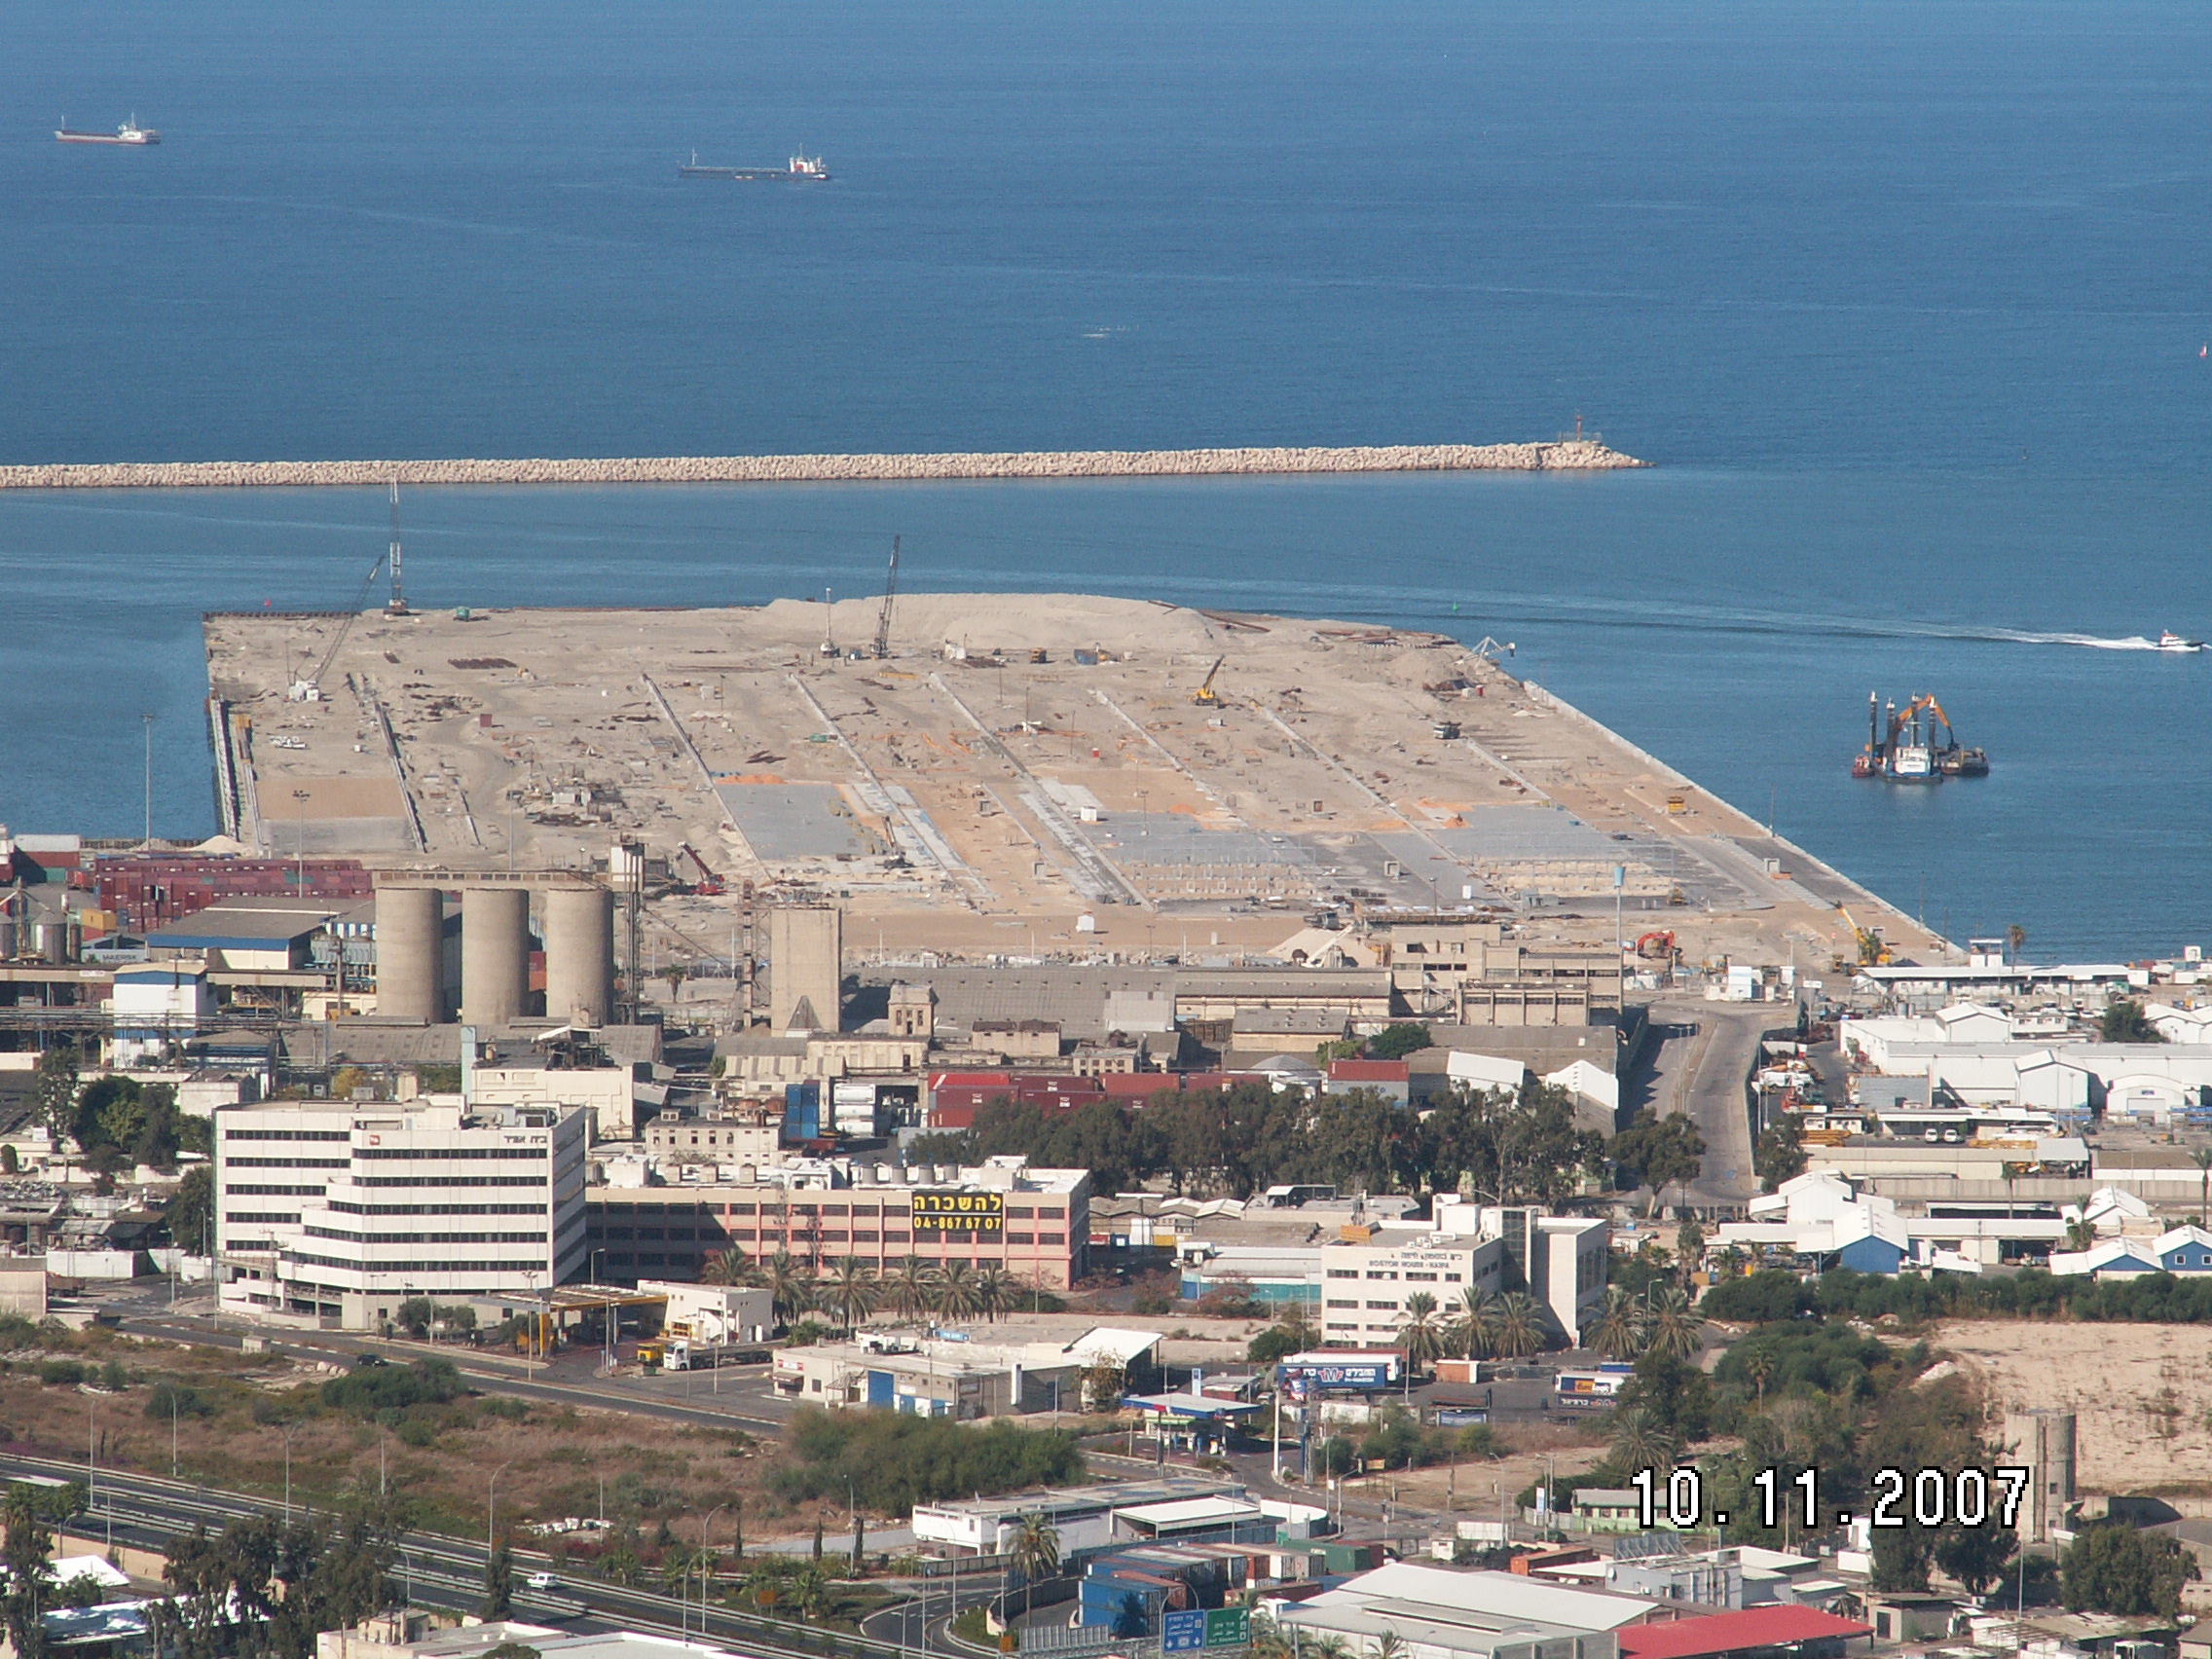 الأسطول السادس الأمريكى قواعده وأهم أسلحته  Haifa-new-pier-01